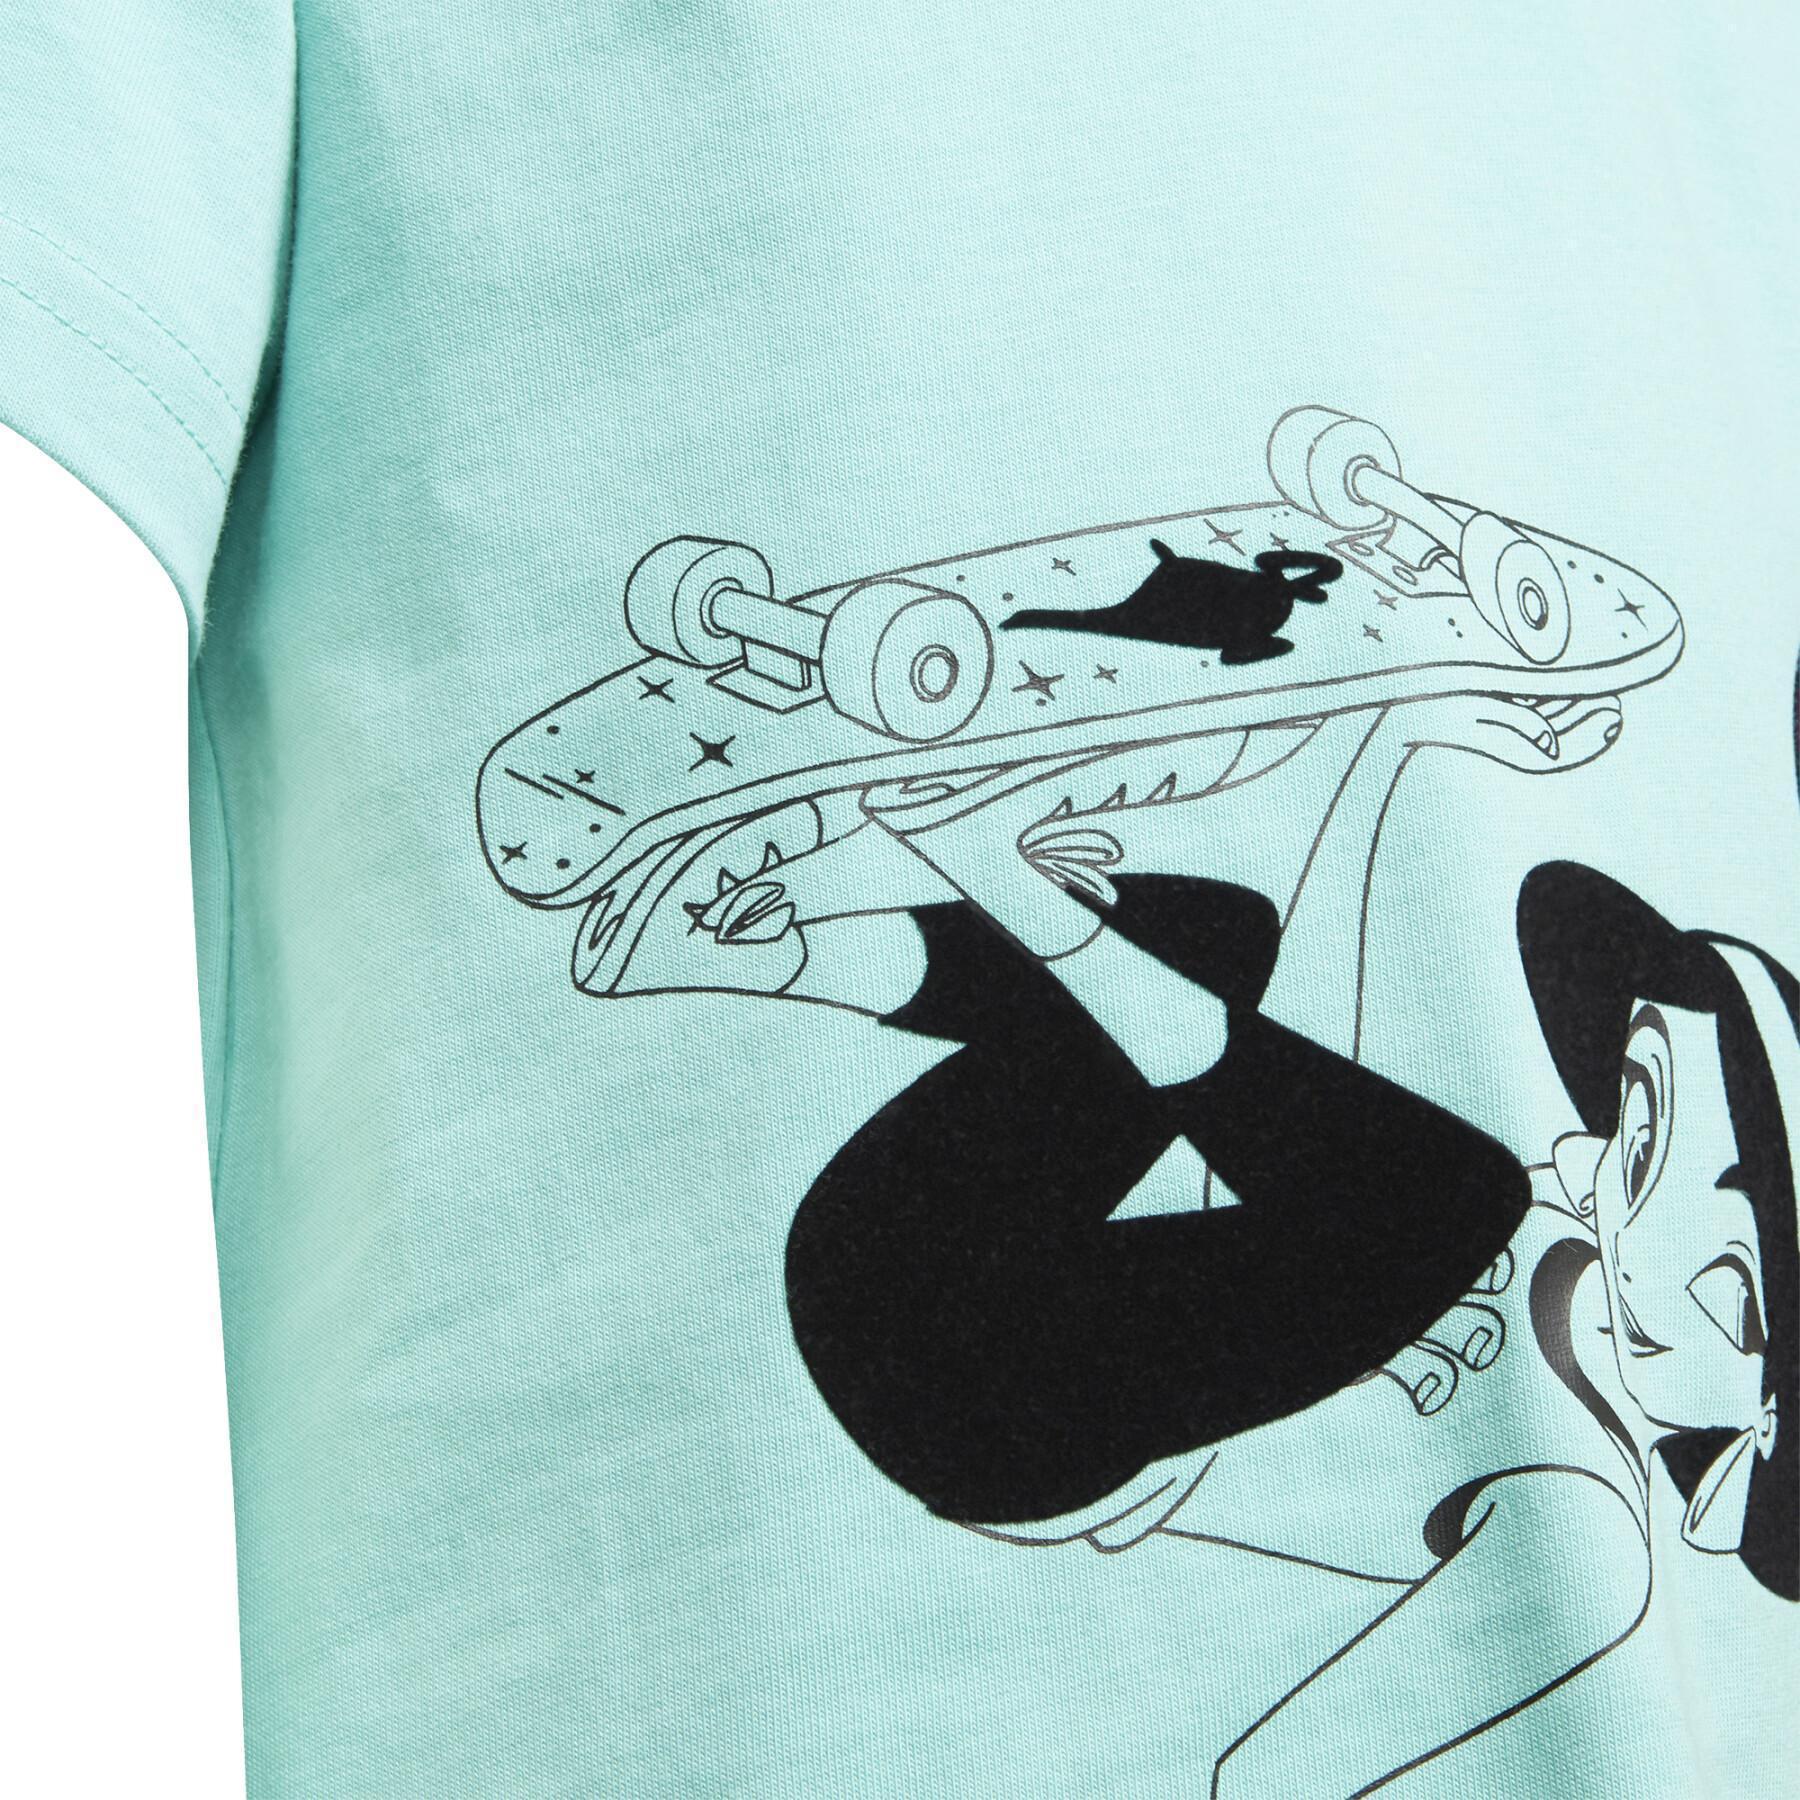 Mädchen-T-Shirt adidas Disney Comfy Princesses